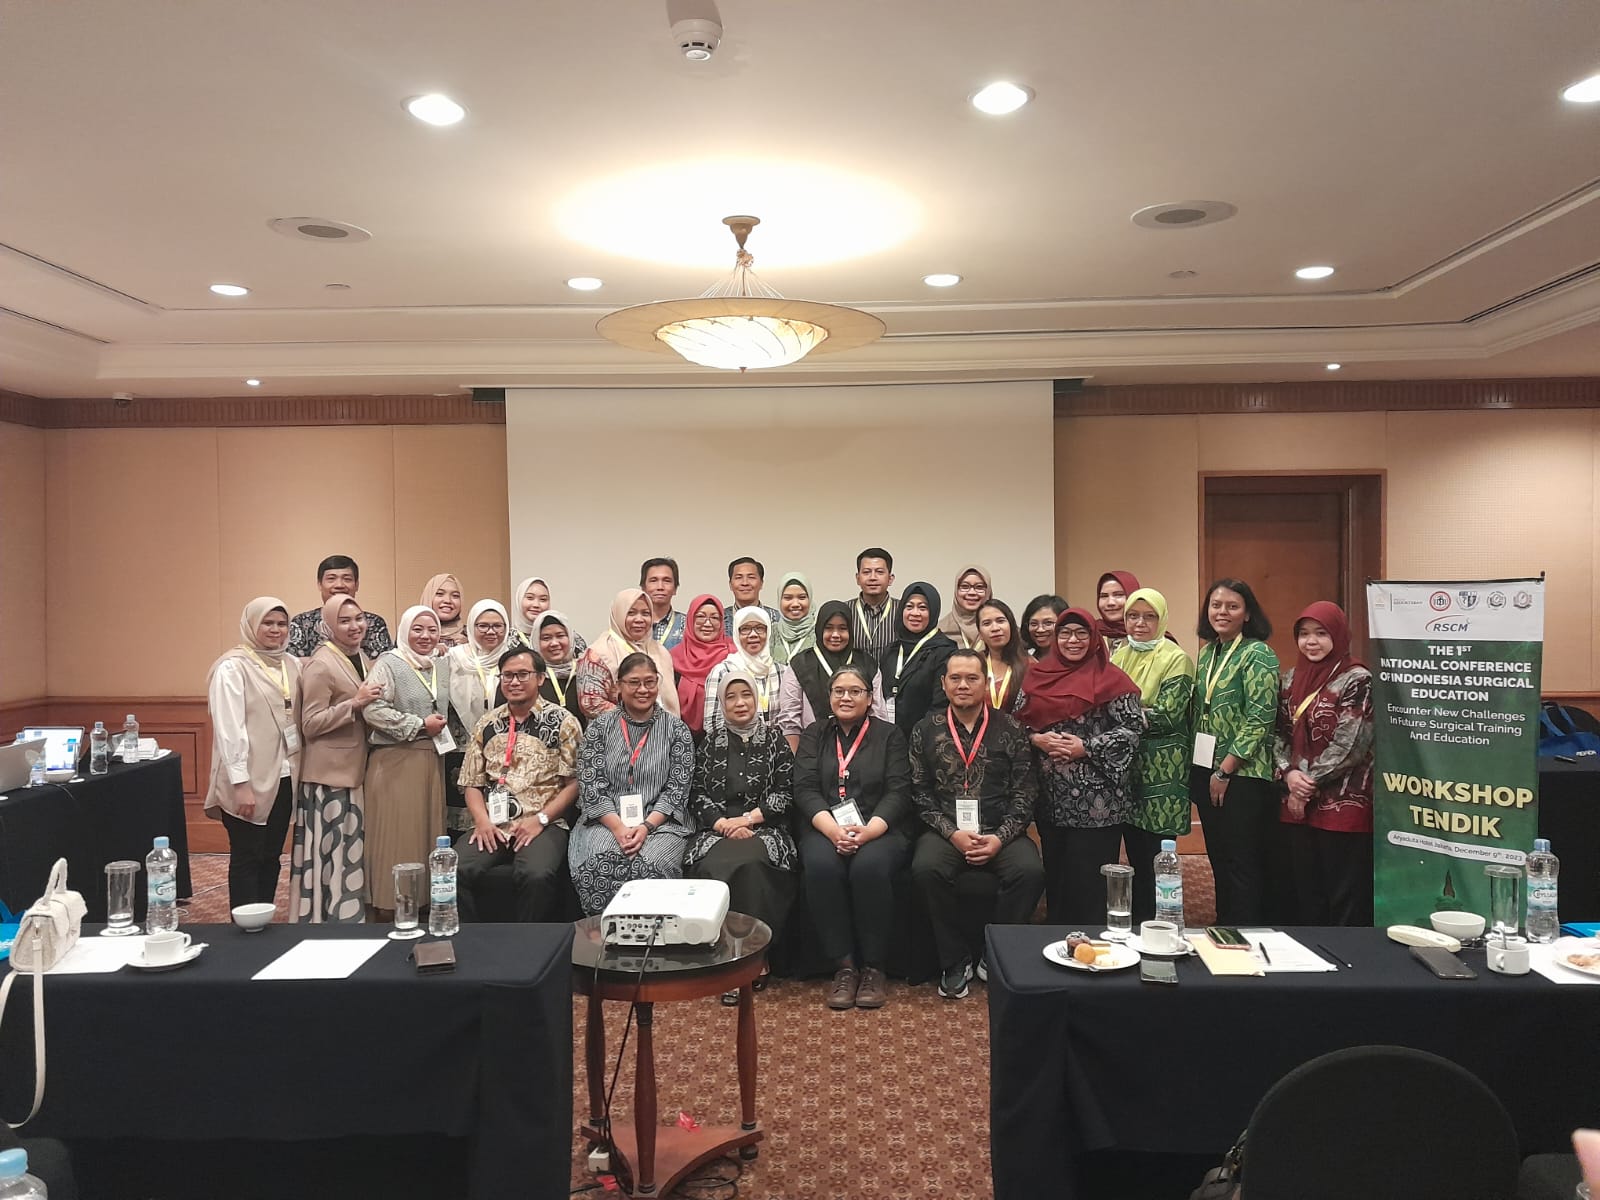 Workshop Manajemen Keuangan, Administrasi dan Mutu Pendidikan Program Studi Ilmu Bedah di Jakarta